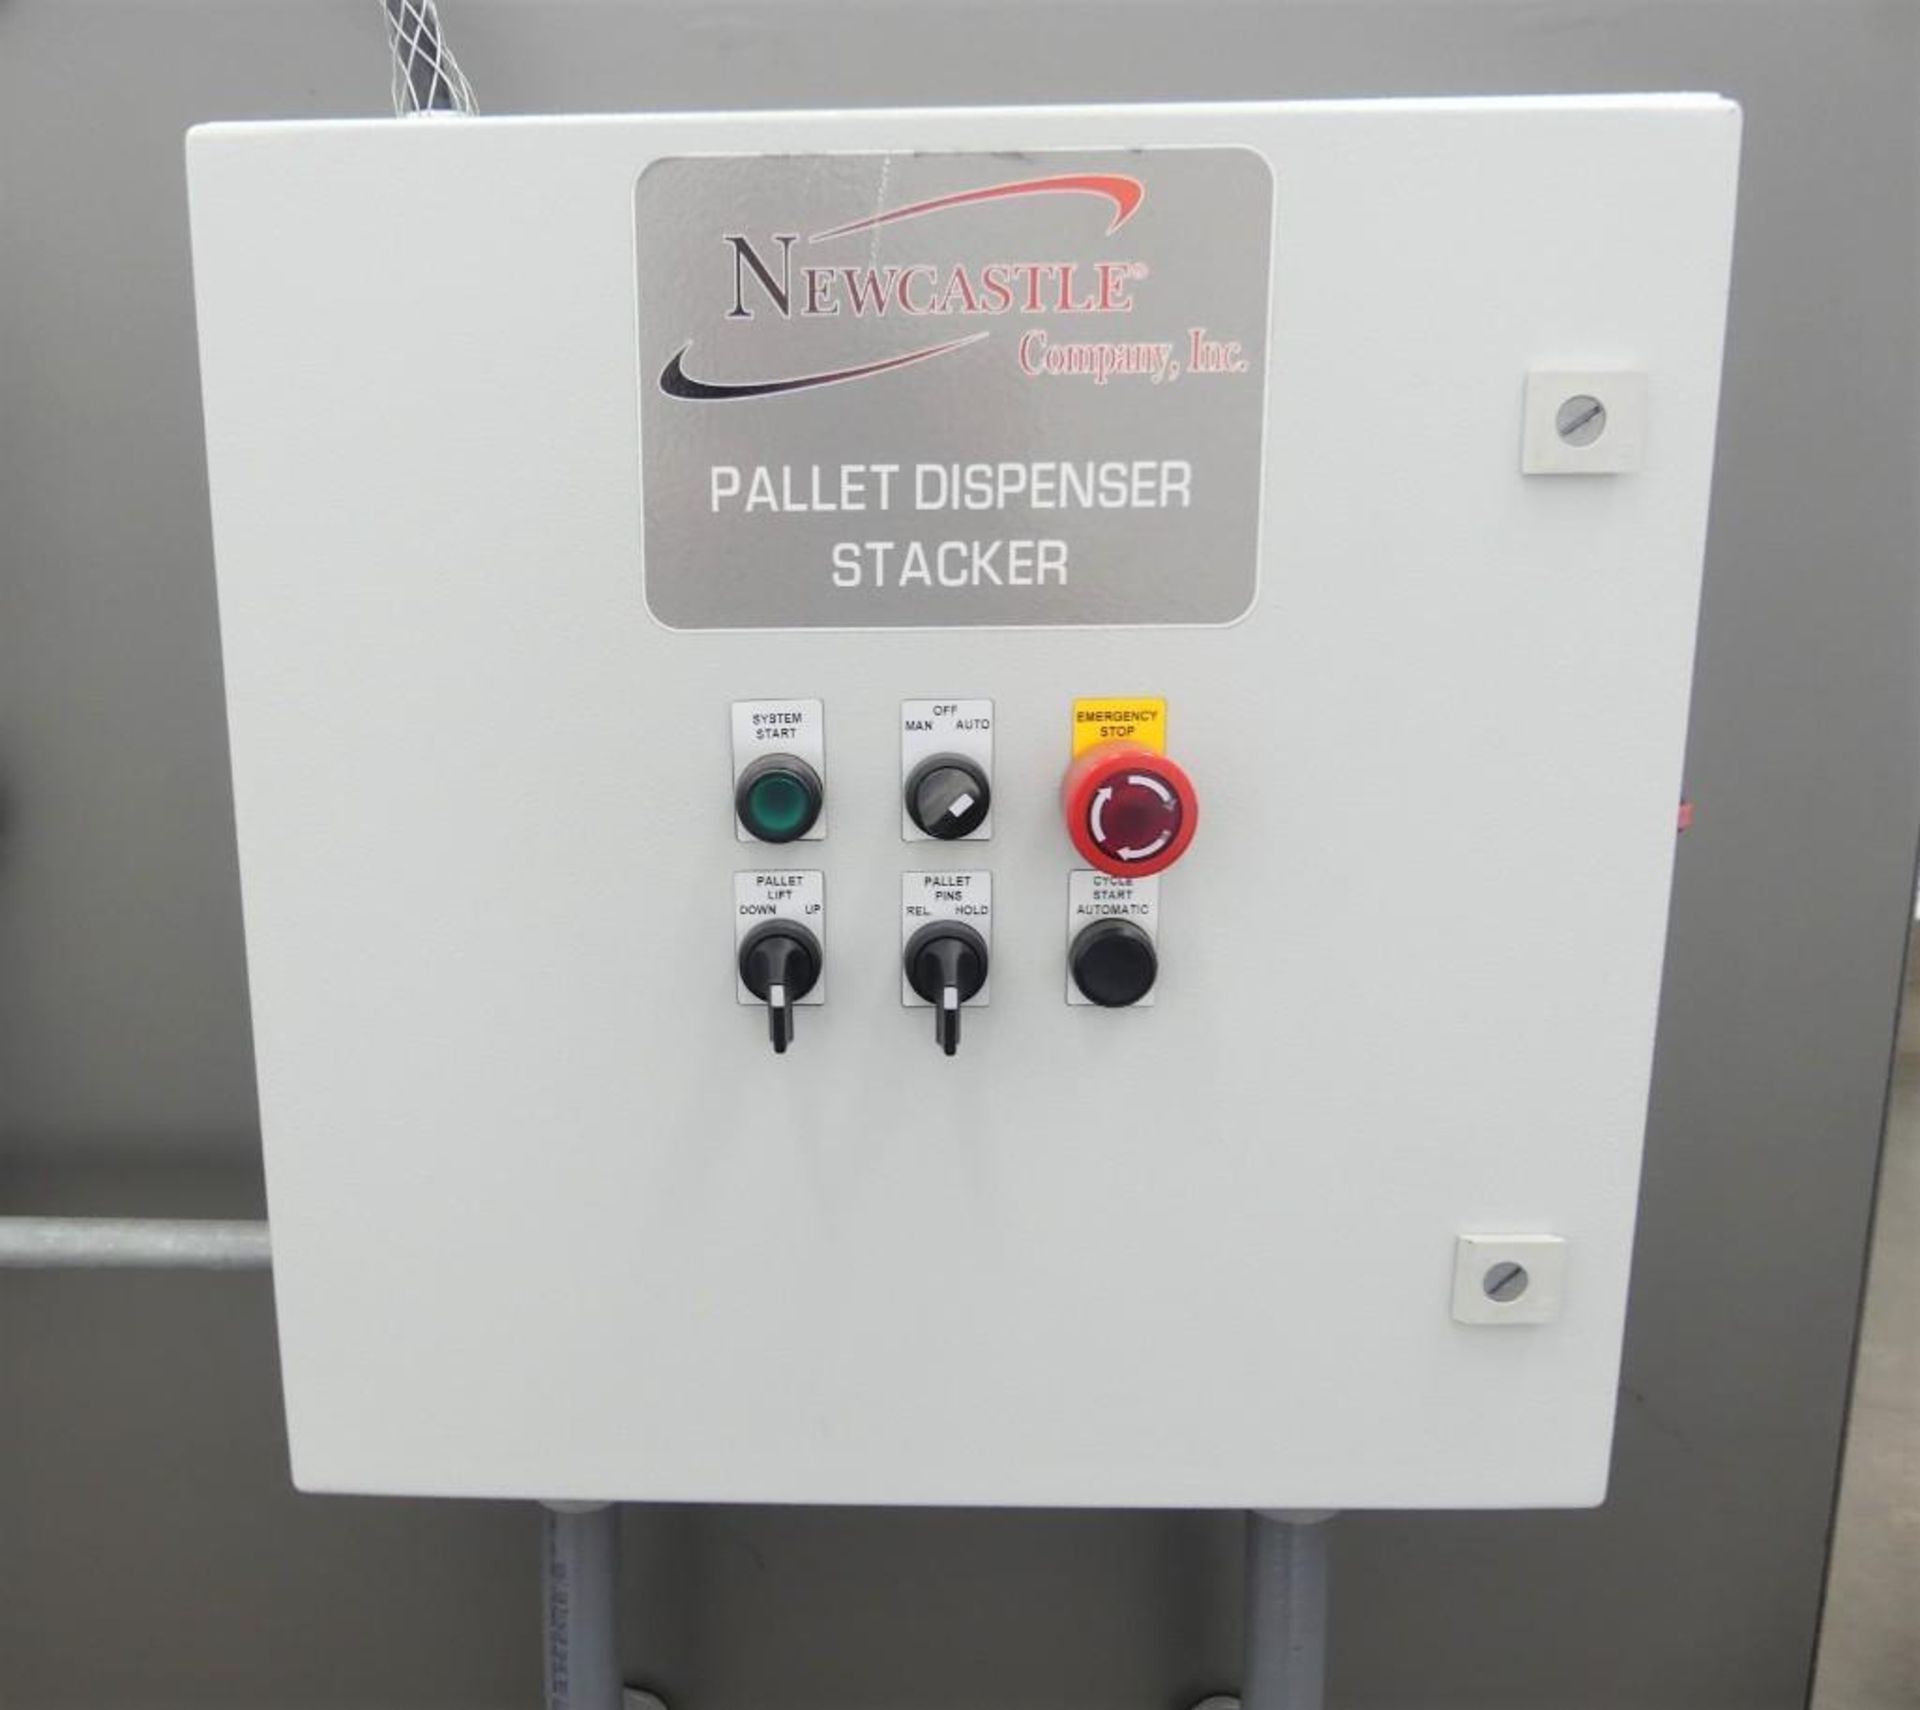 Newcastle 50-57 J Floor Level Pallet Dispenser Stacker - Image 4 of 5